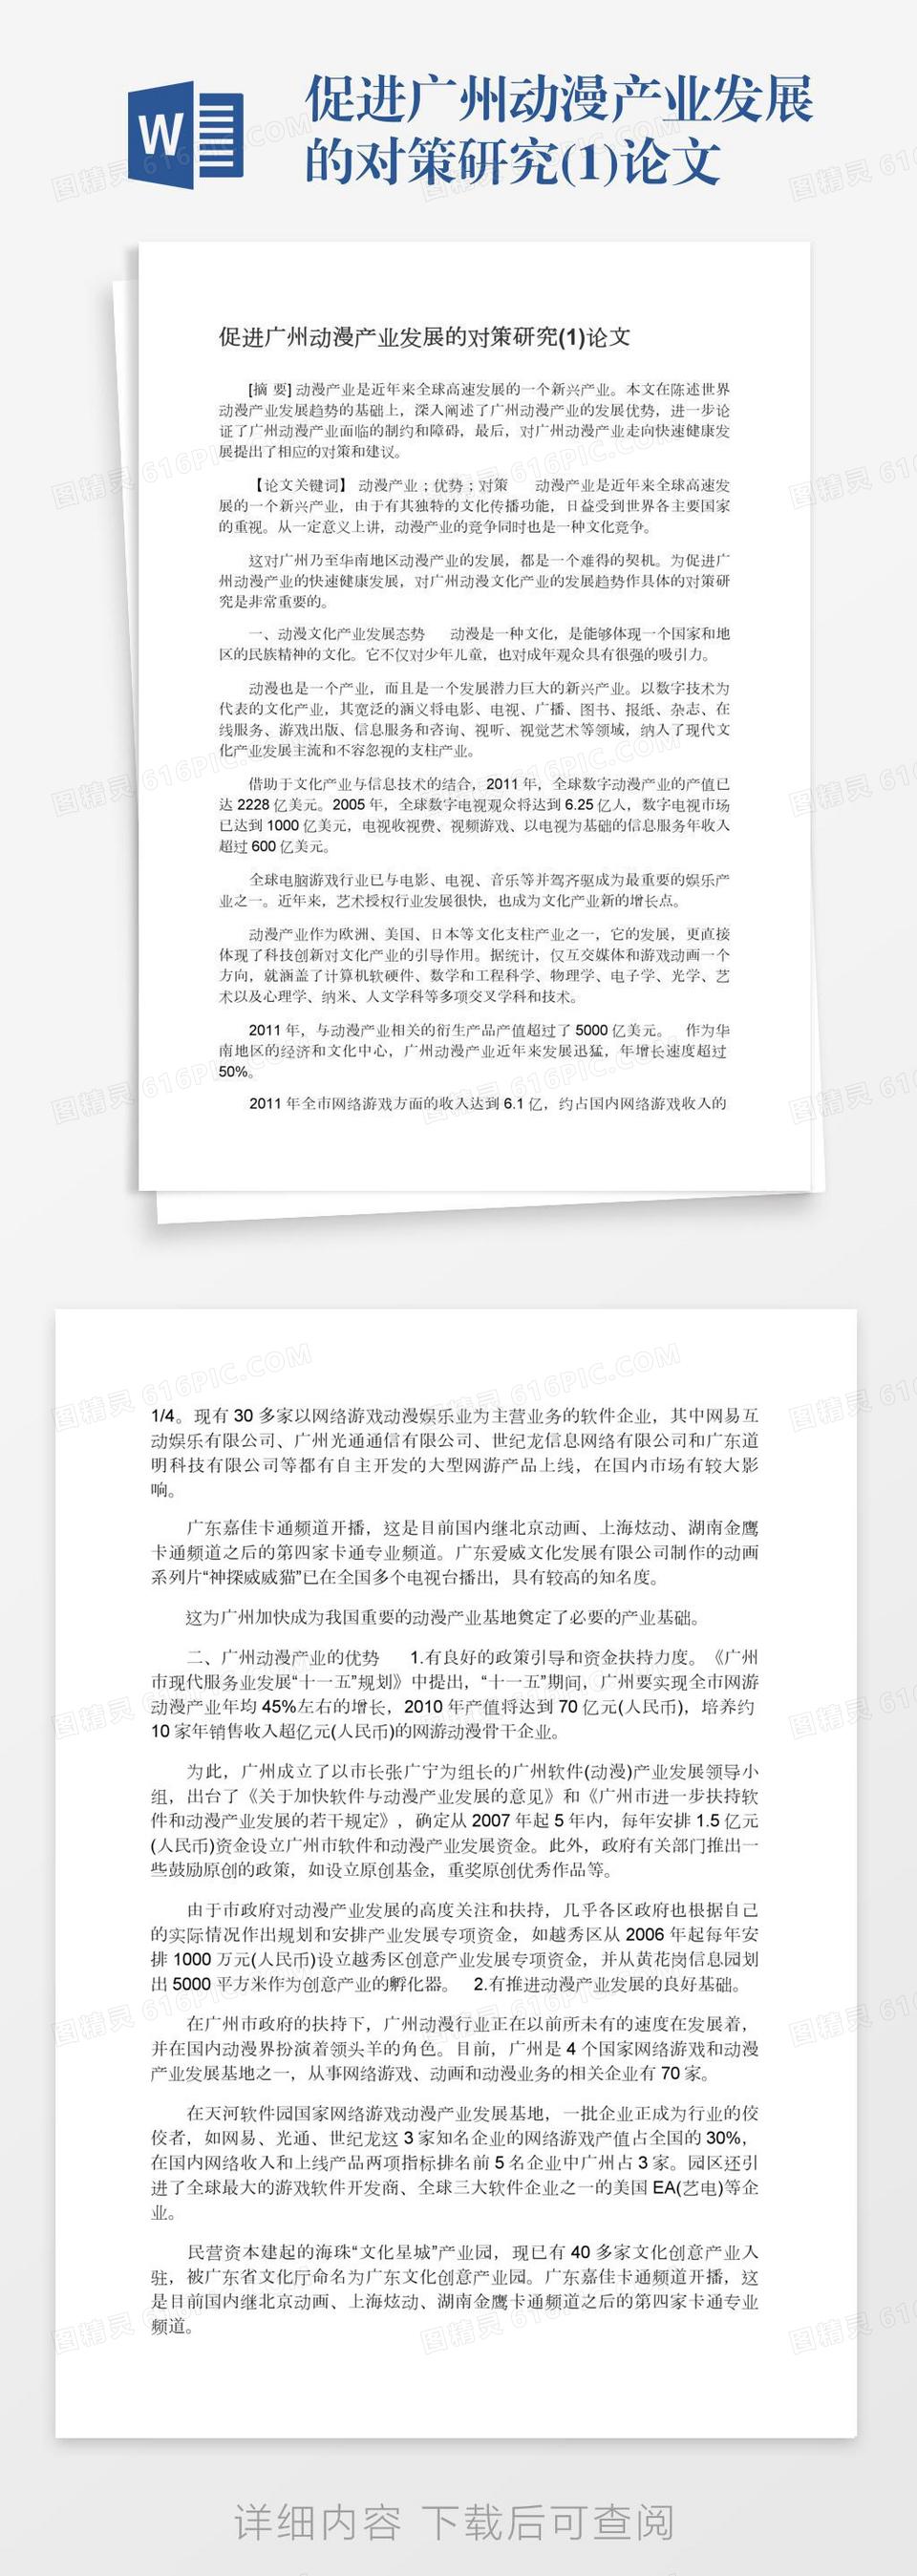 促进广州动漫产业发展的对策研究(1)论文